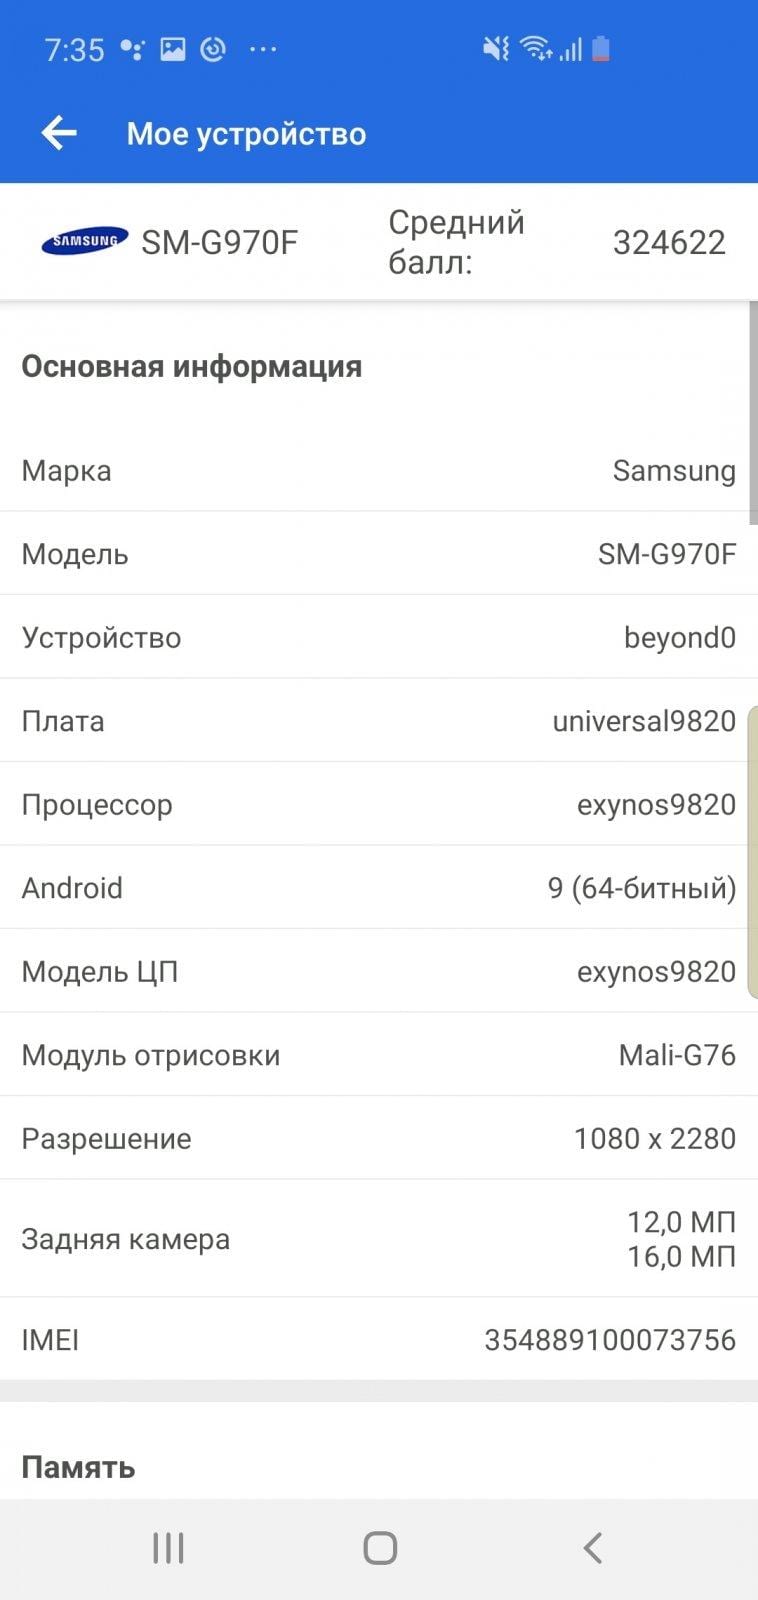 Обзор Samsung Galaxy S10e. Лучший компактный флагман (screenshot 20190417 073541 antutu benchmark)